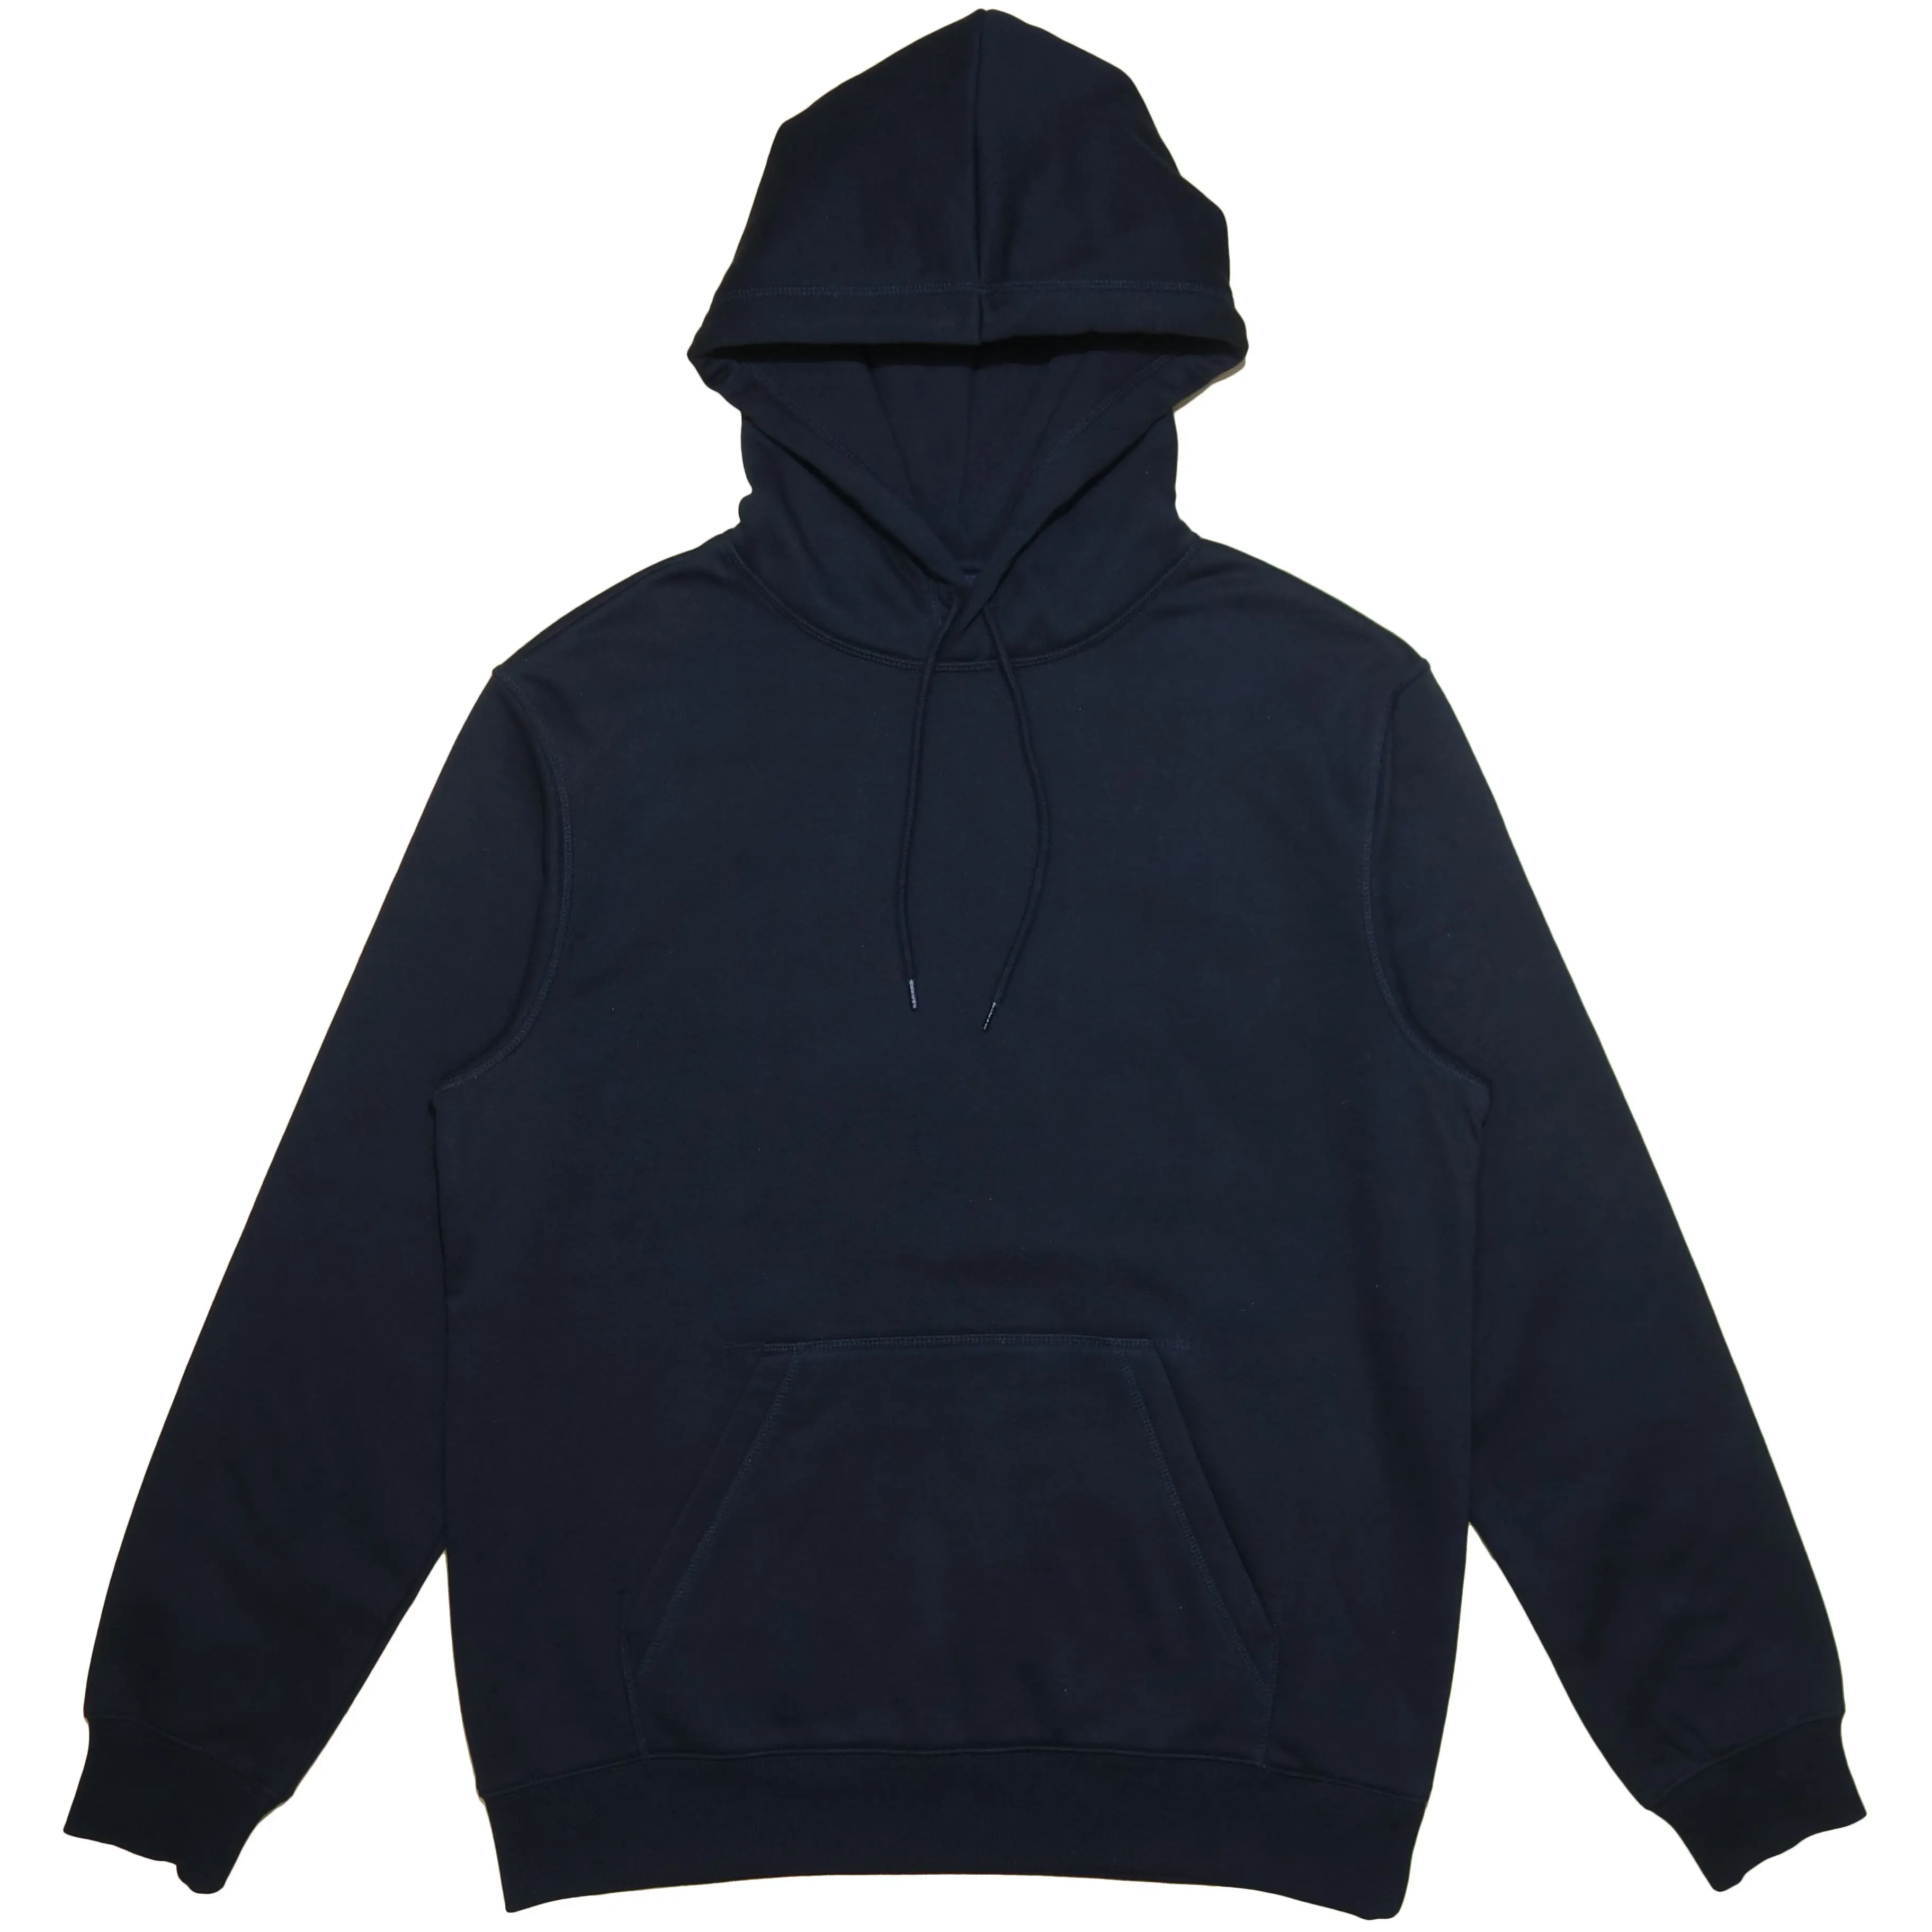 Unisex Plain Streetwear Vrouwen Hooded Sweatshirt